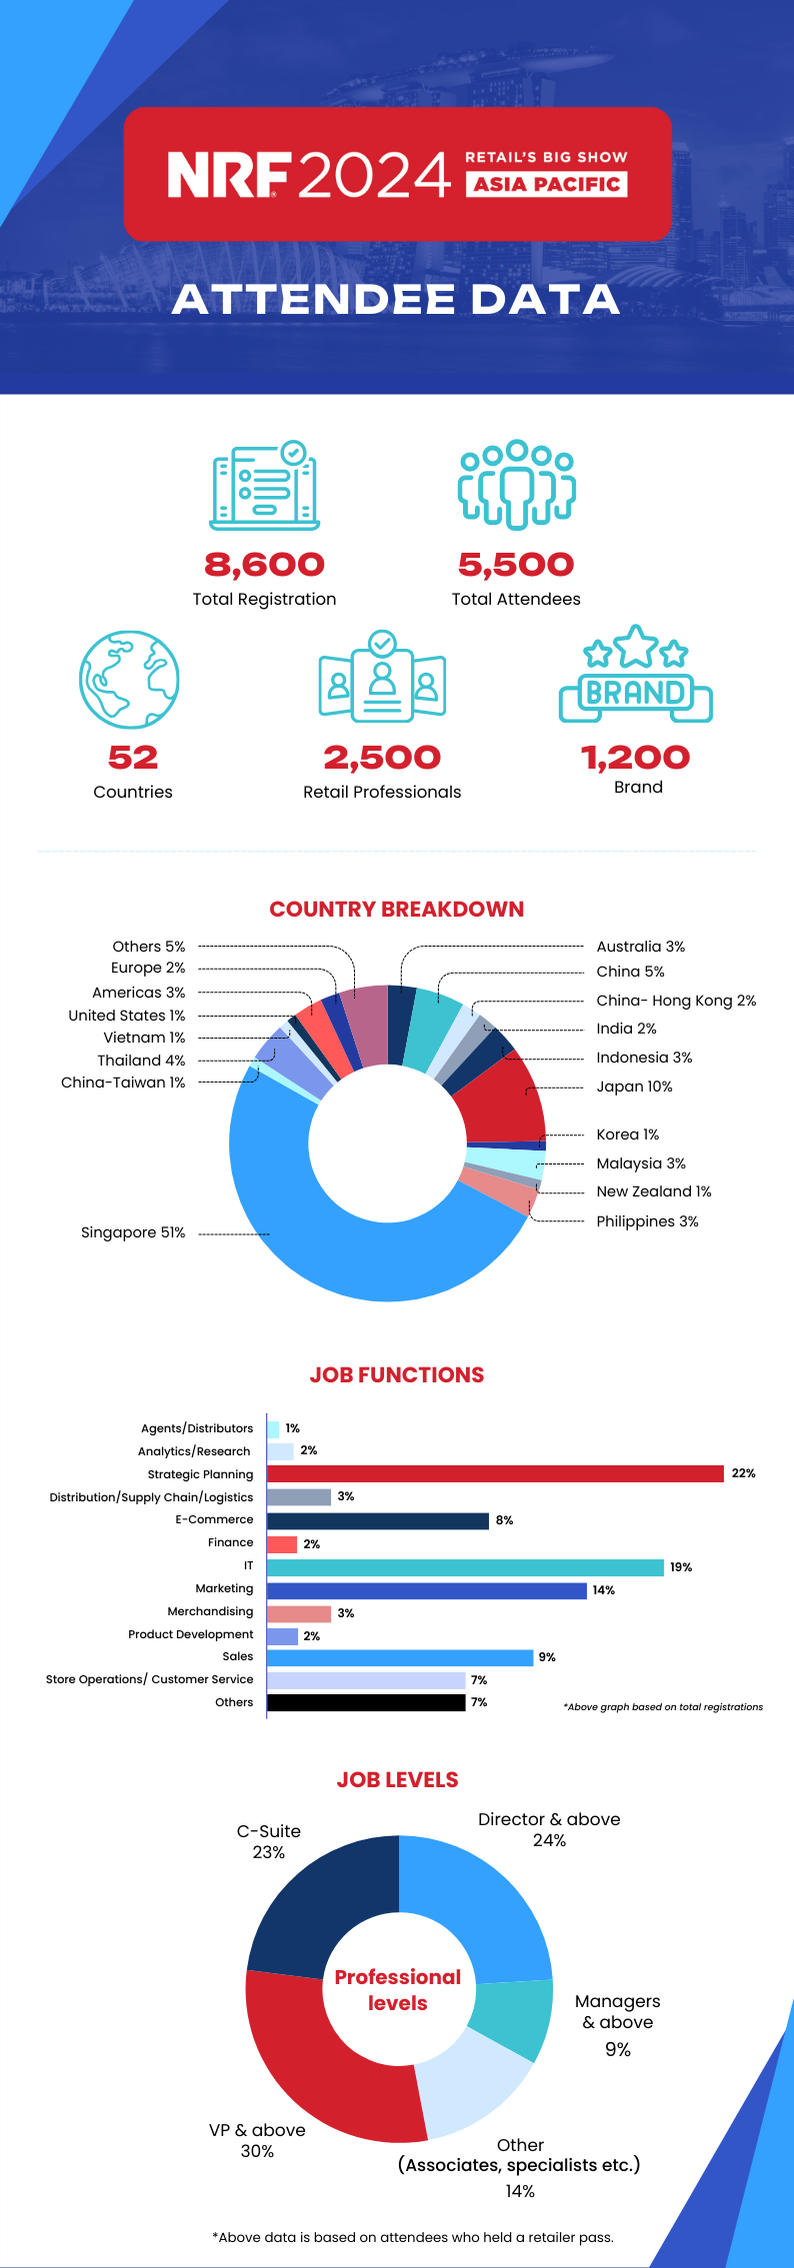 NRF APAC 2024 infographic